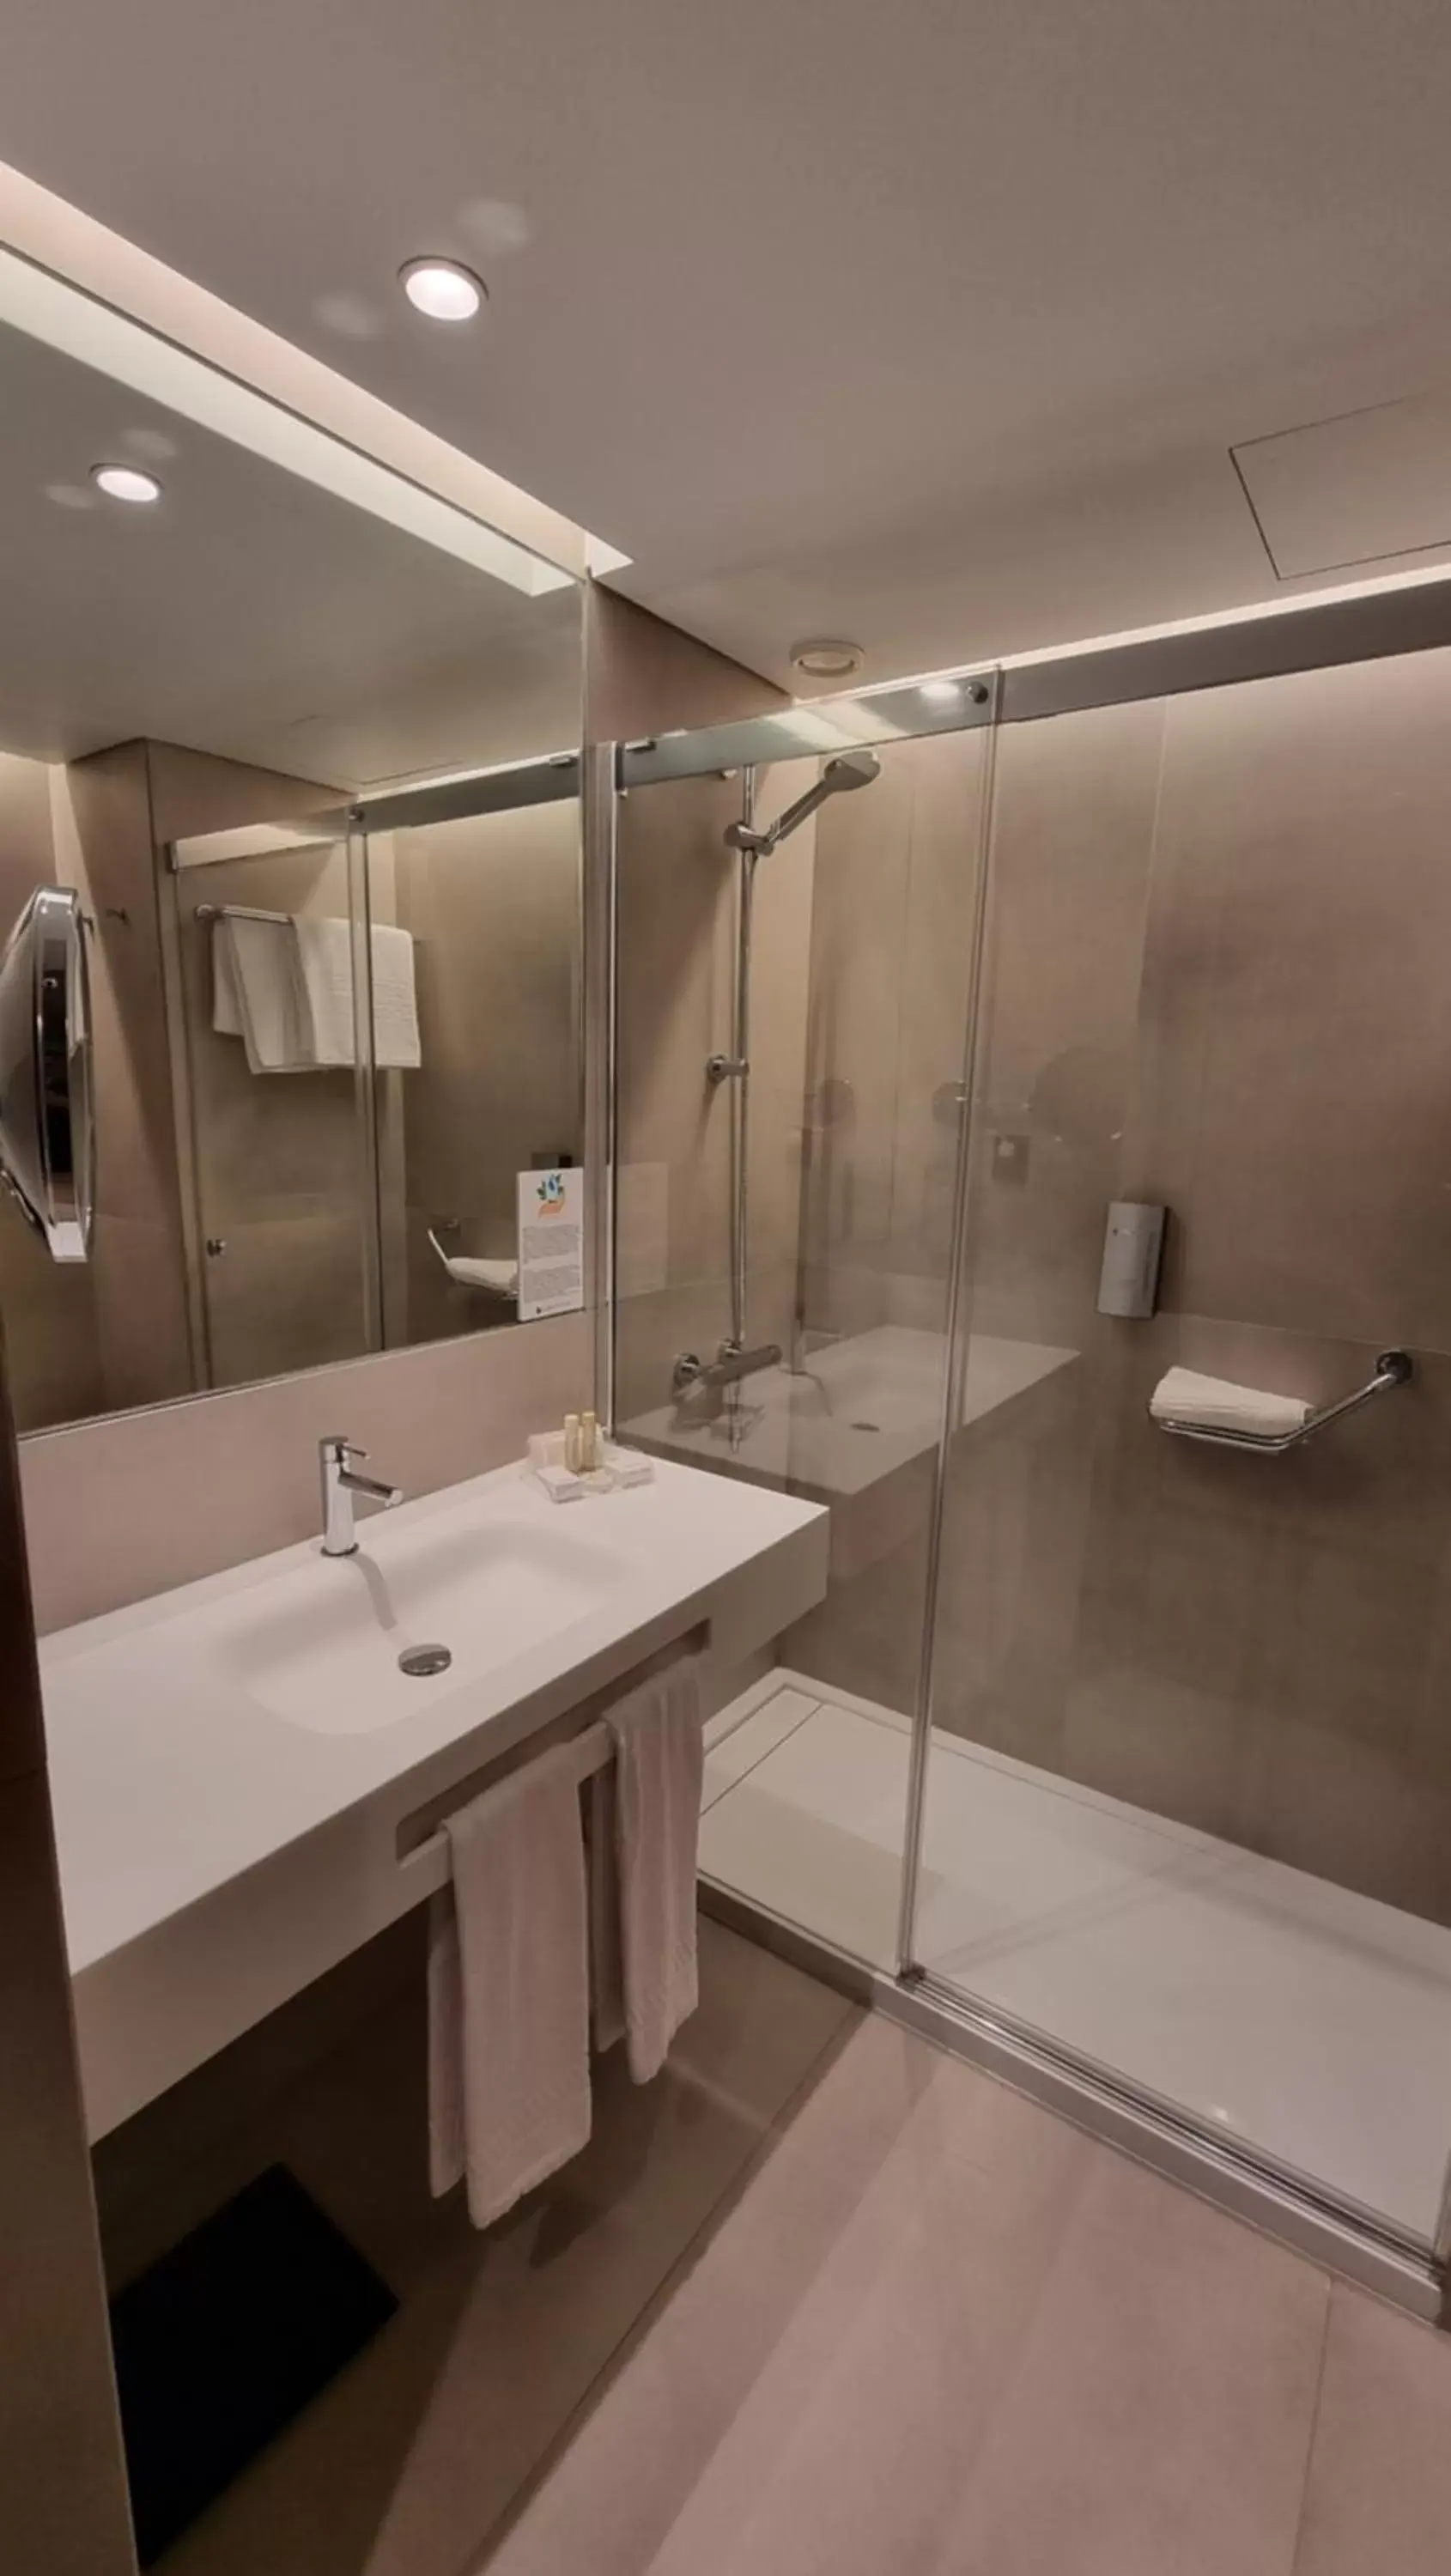 Bathroom in Hotel Principe Avila